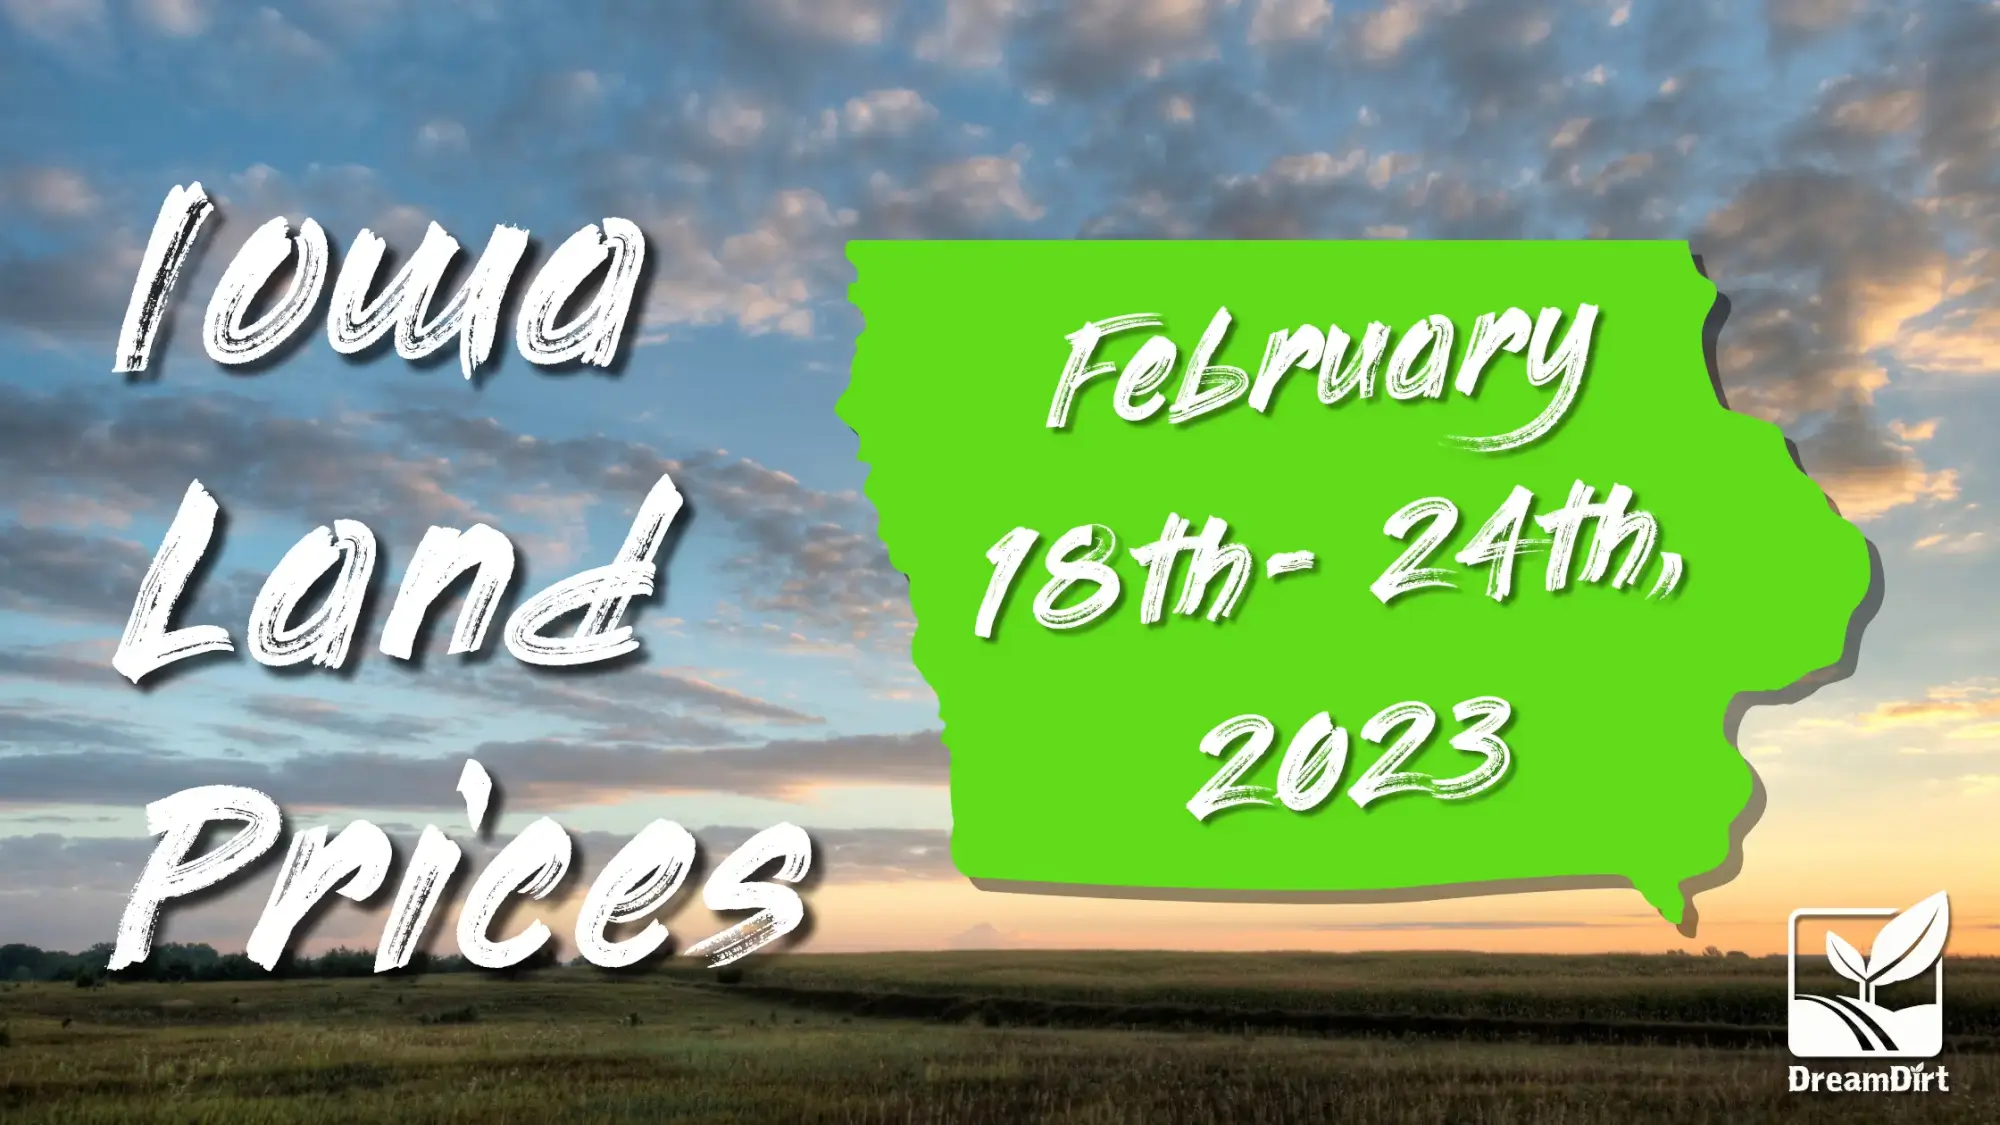 Iowa land prices feb 18-24th, 2023